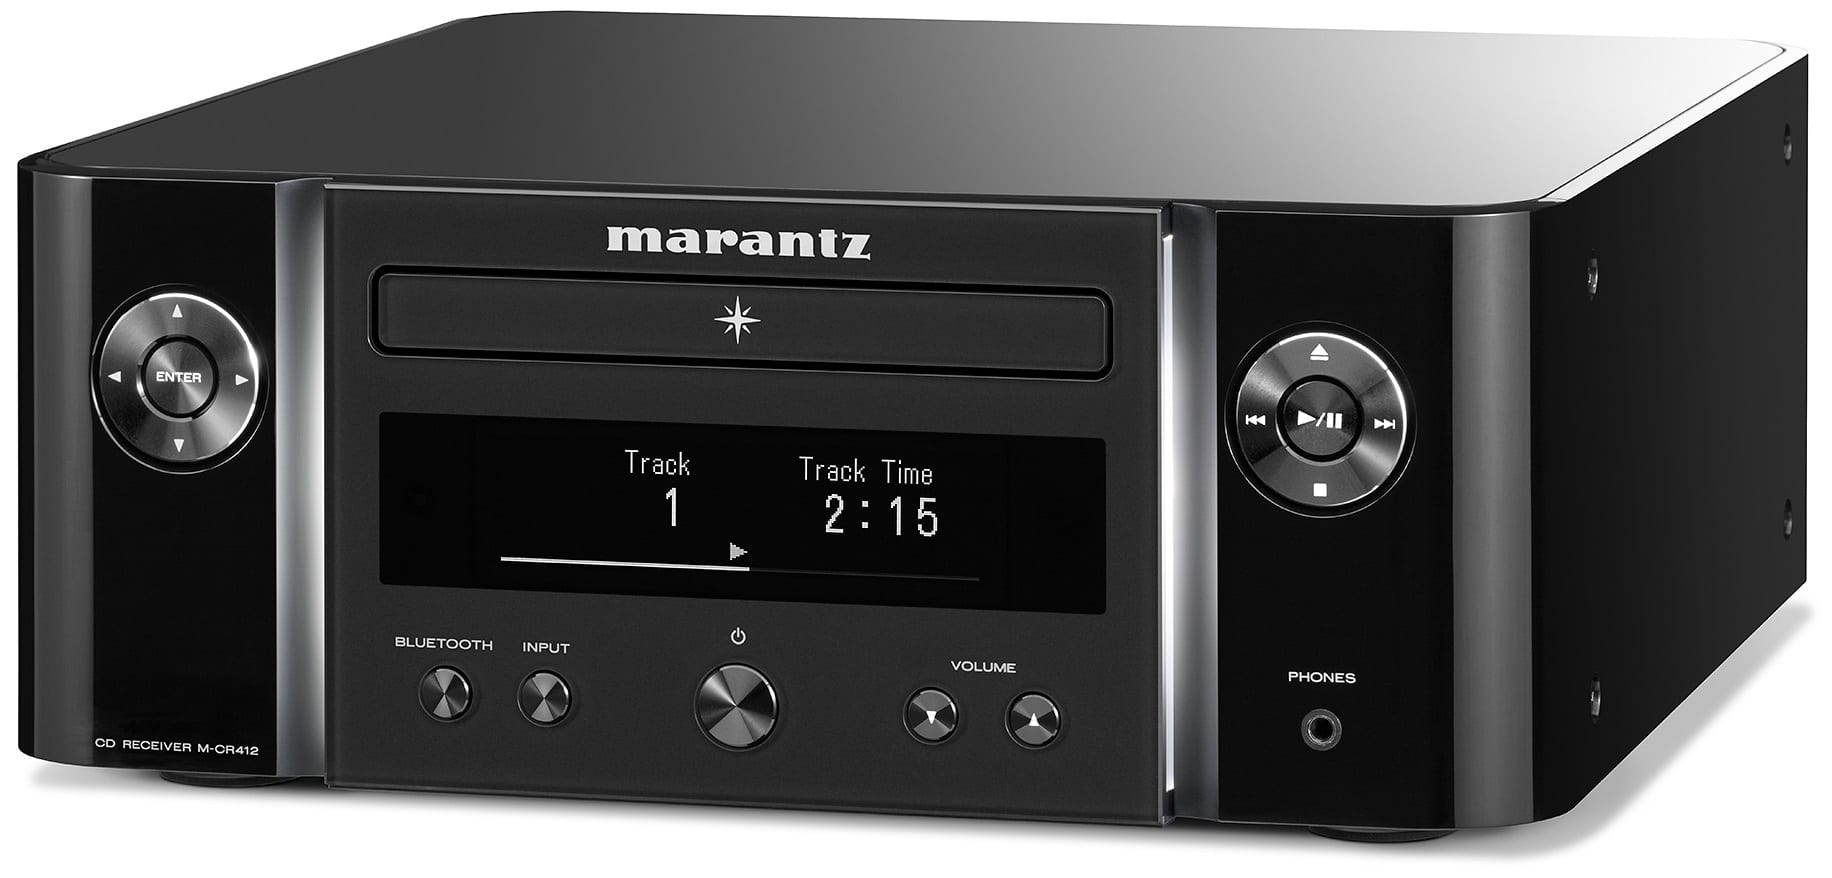 Marantz M-CR412 zwart - zij frontaanzicht - Stereo receiver